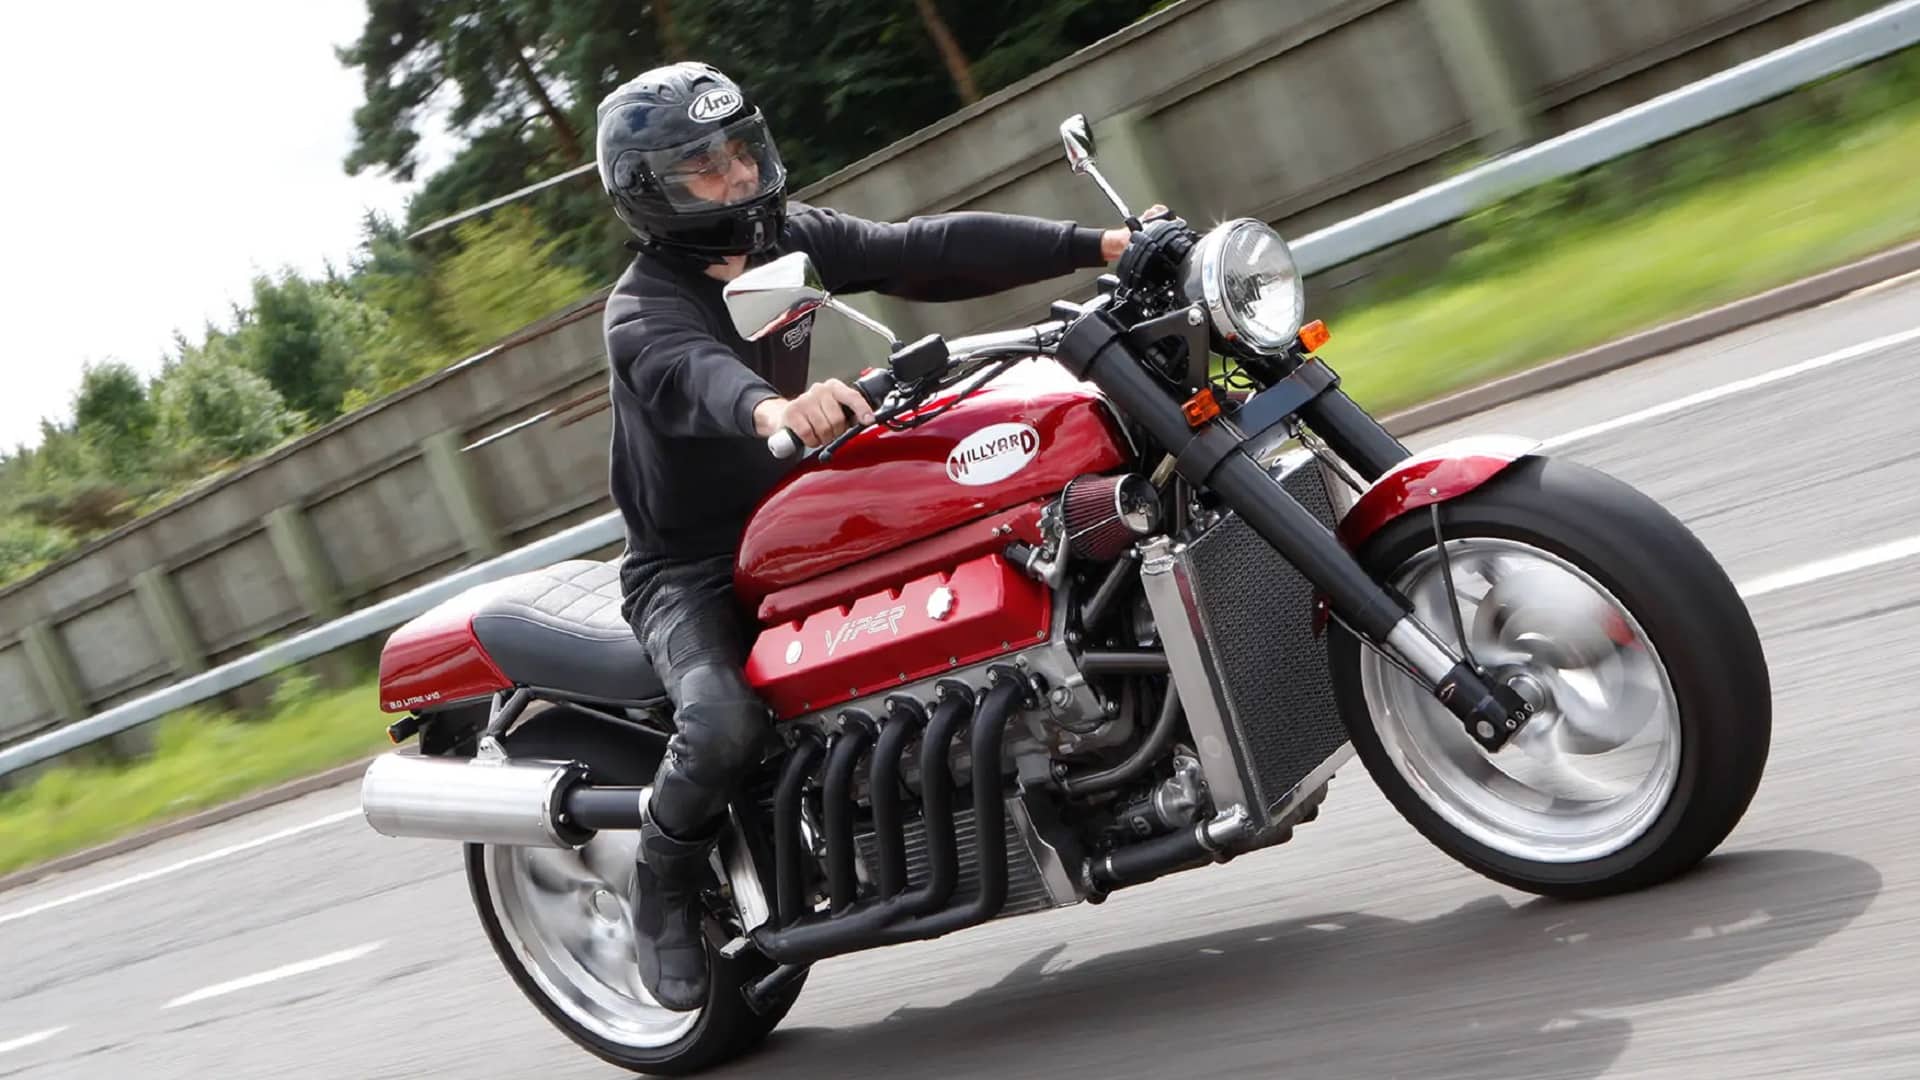 Viper Motorcycle - Top 3 Best Picks!